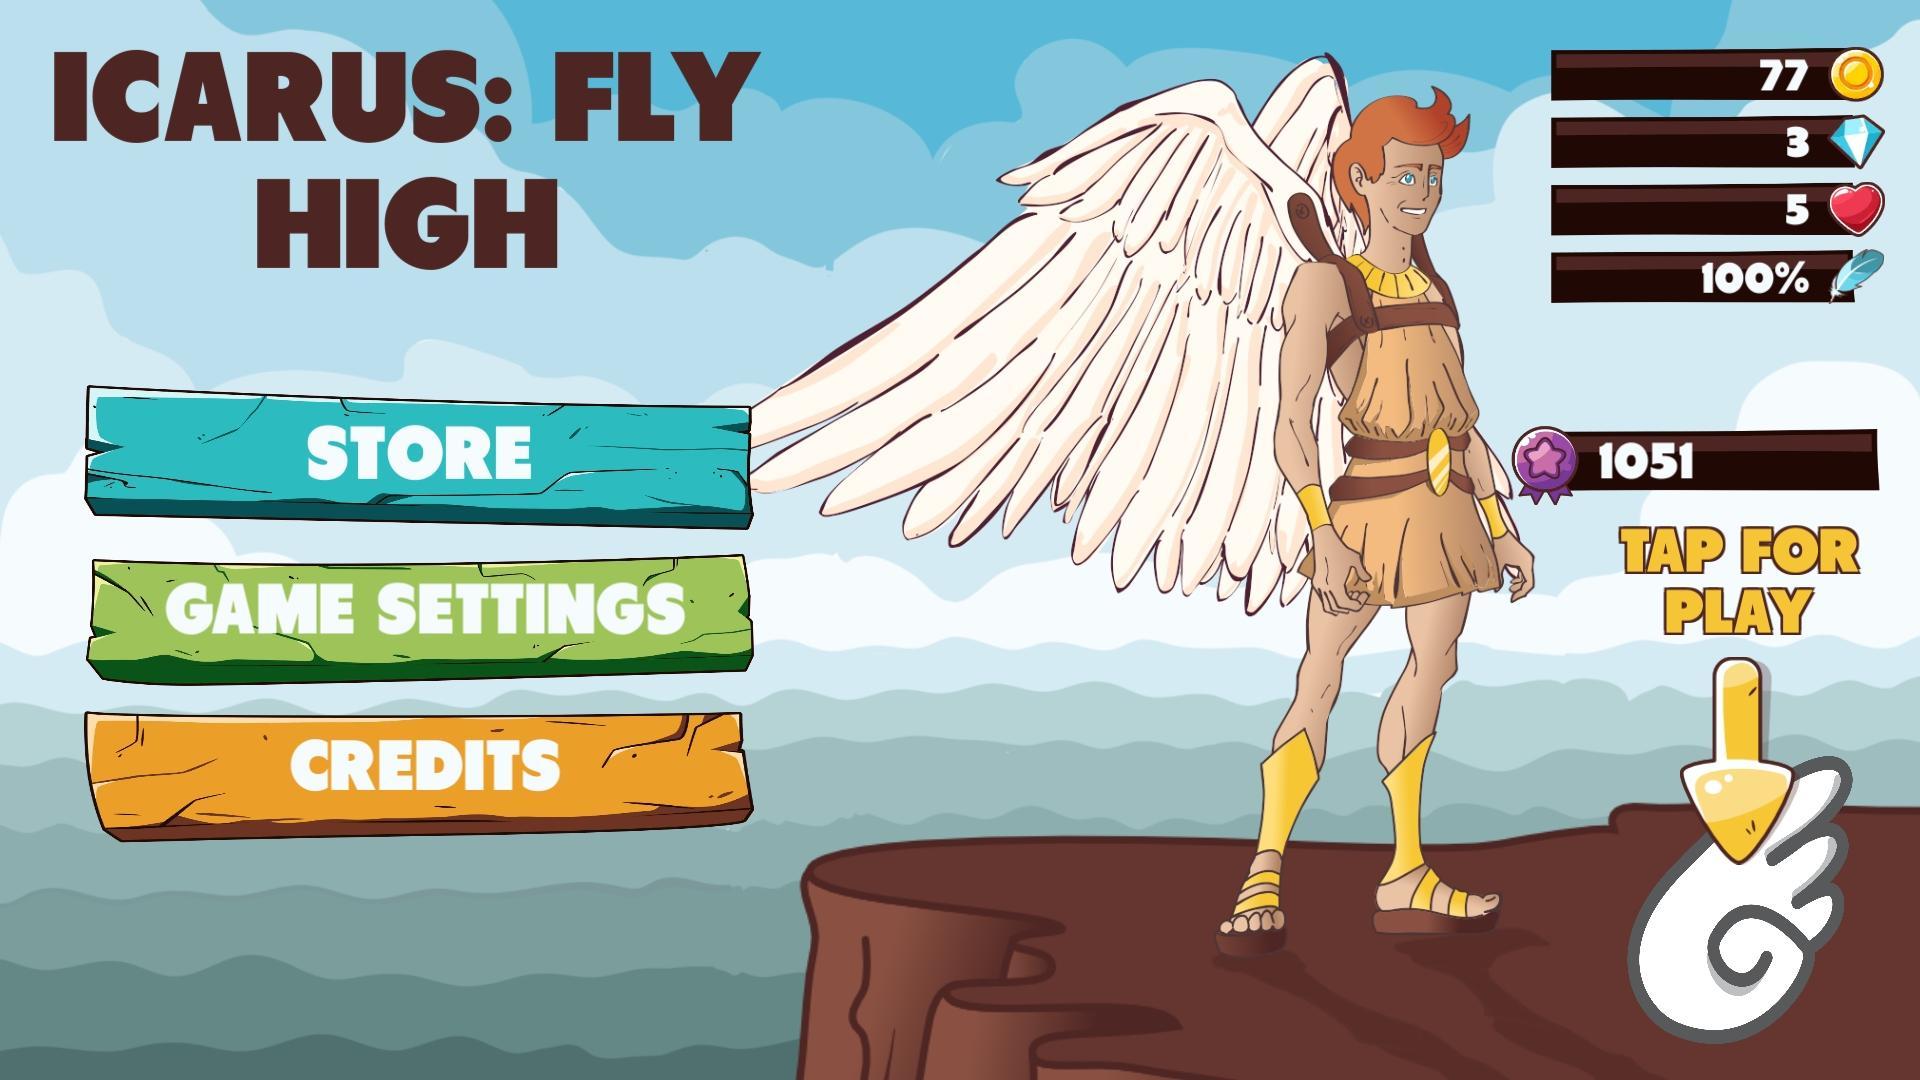 Be a fly game. Икар игра. Fly High игра. Проект Icarus. Игра Icarus локатор.